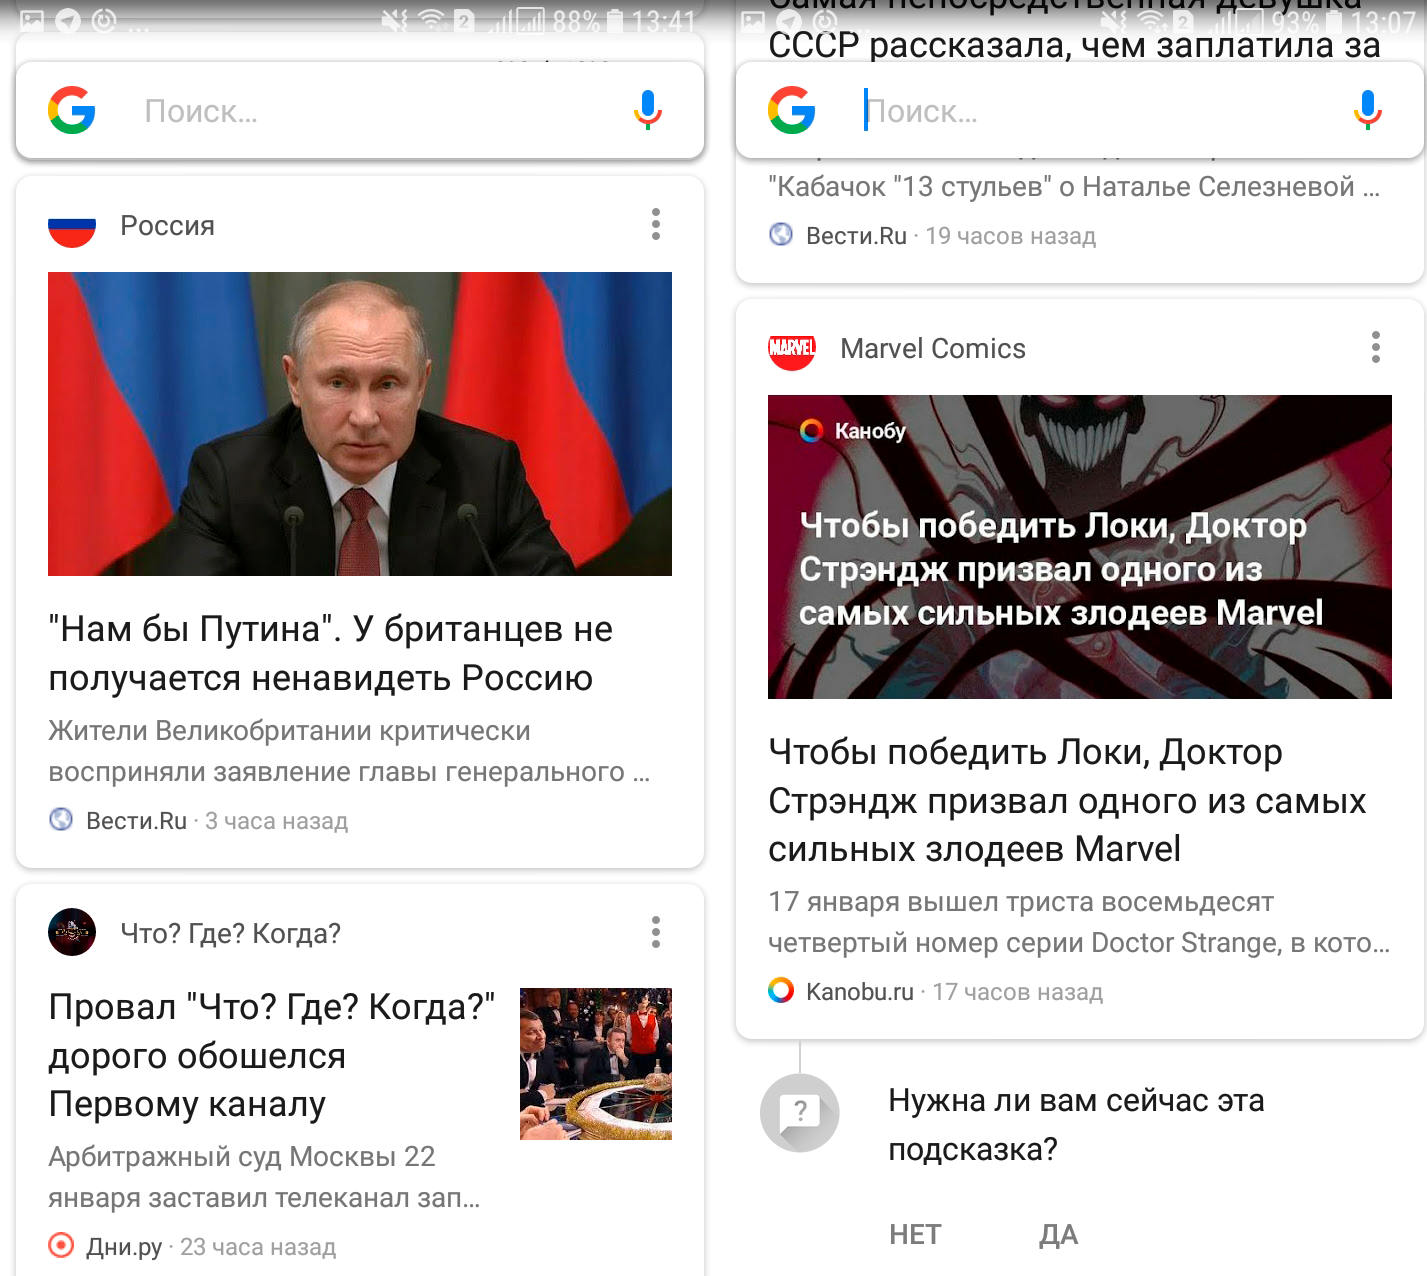 Google Now joked well) - Longpost, Marvel, Ms. Marvel, Vladimir Putin, Politics